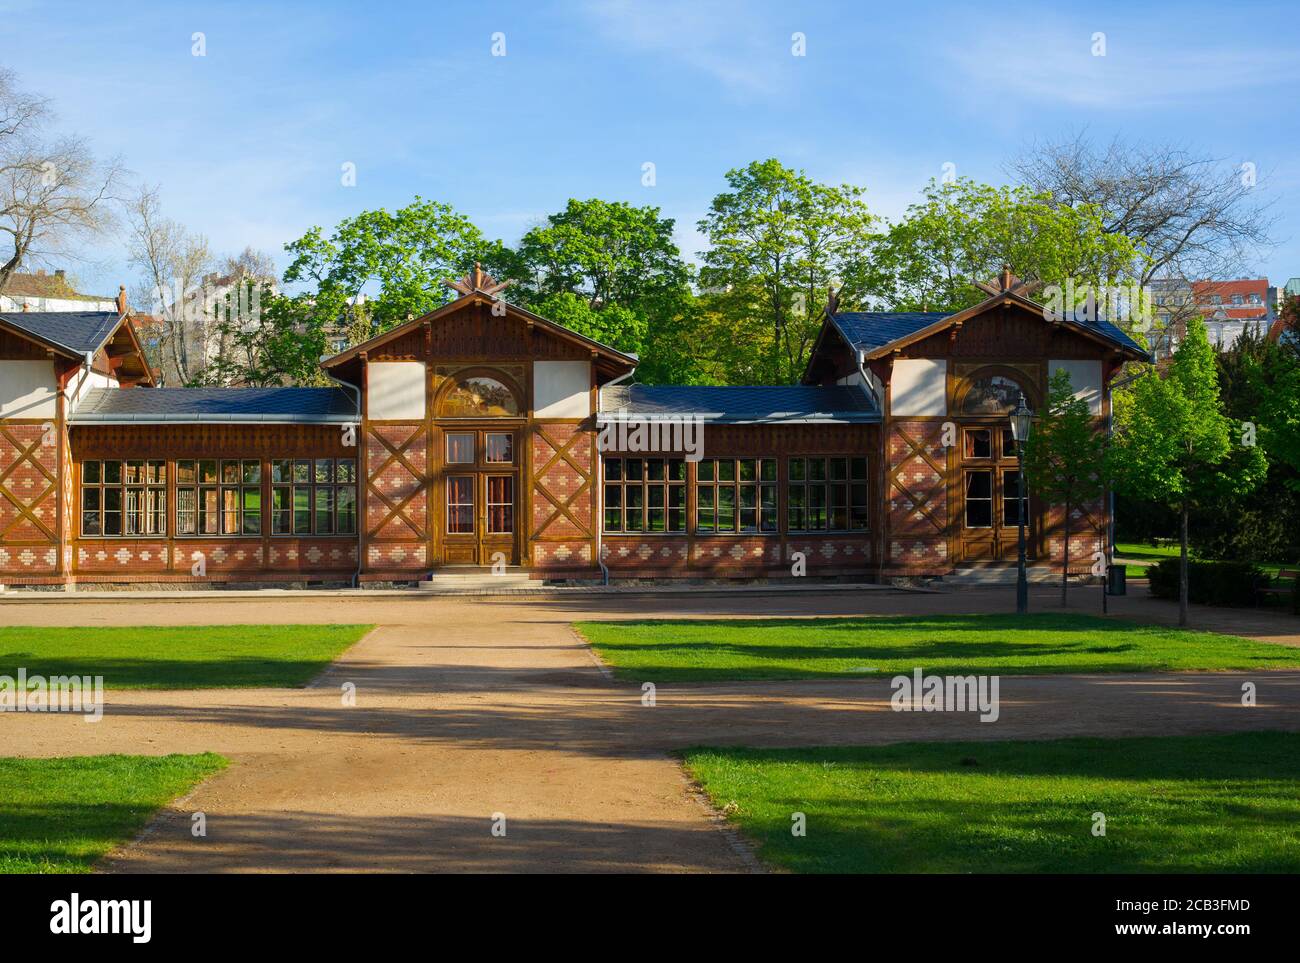 Pavillon à Grebovka / Grobovka, Jardins Havlicek, Prague, République Tchèque / Tchéquie - petit bâtiment dans le parc. Arbres verts et herbe autour. Vibran Banque D'Images